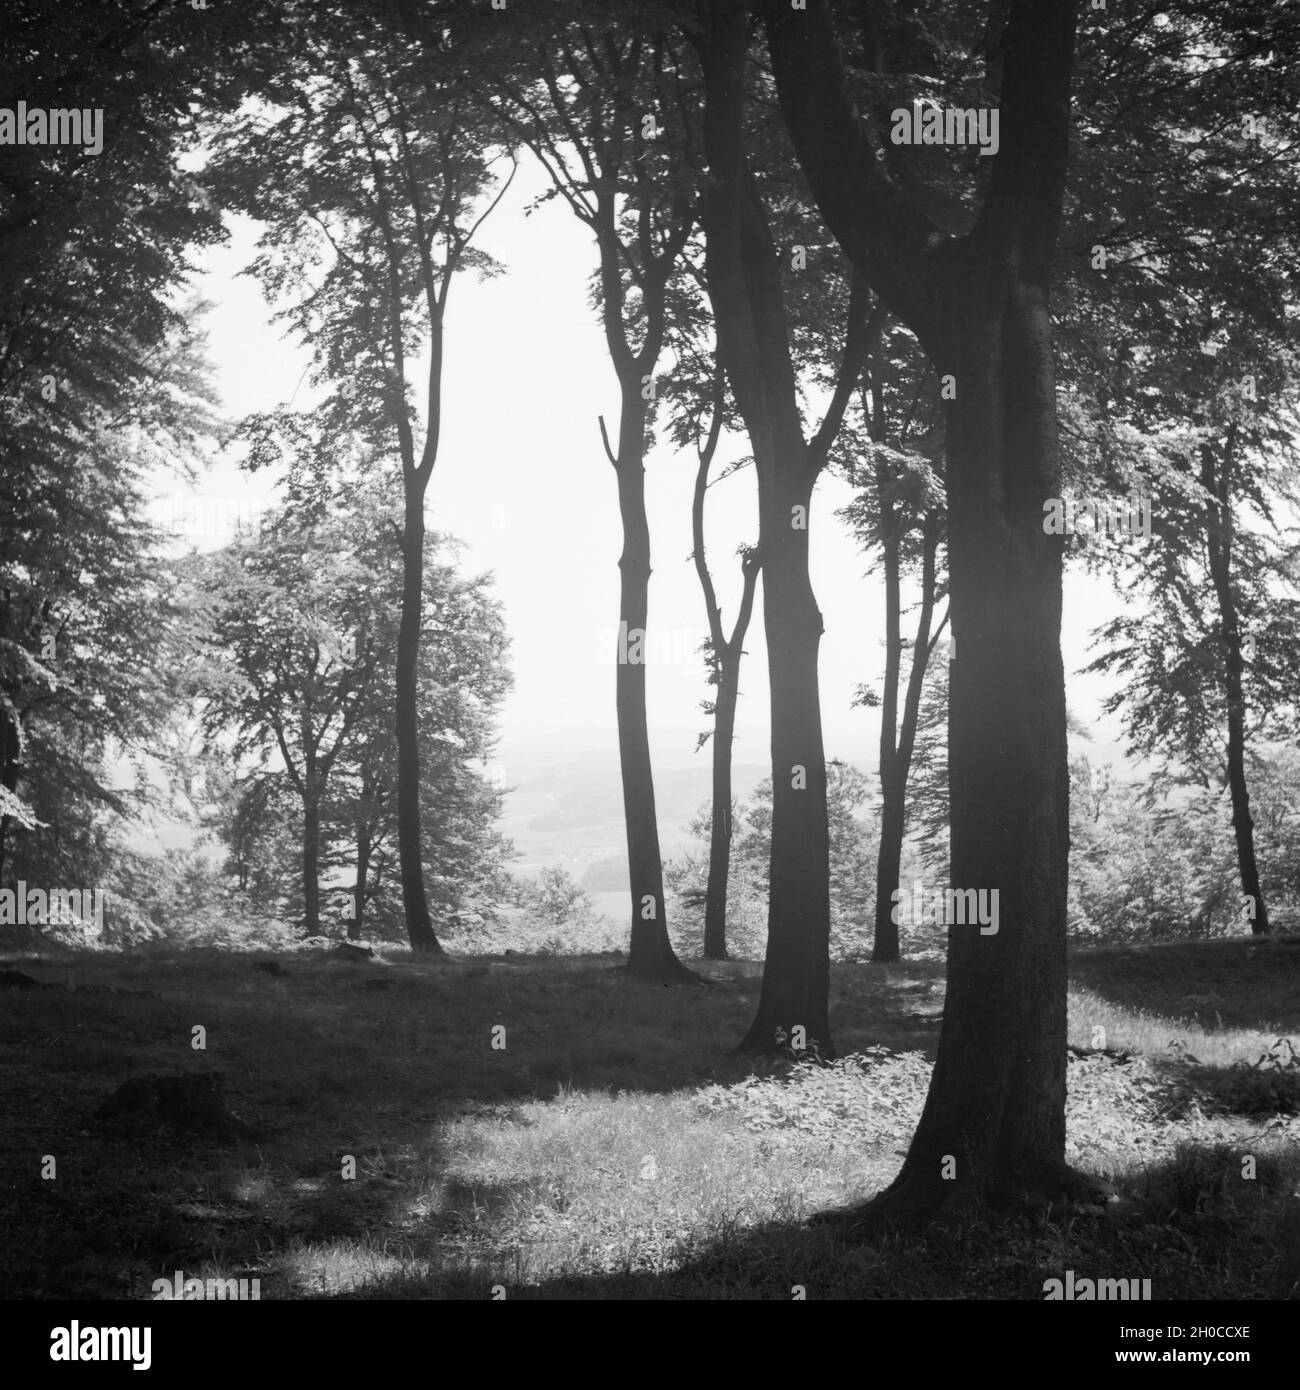 Wald in der Nähe vom Hermannsdenkmal in der Nähe von Hiddesen bei Detmold, Deutschland 1930er Jahre. At the forest aroun dthe Hermann monument next to Hiddesen near Detmold, Germany 1930s. Stock Photo